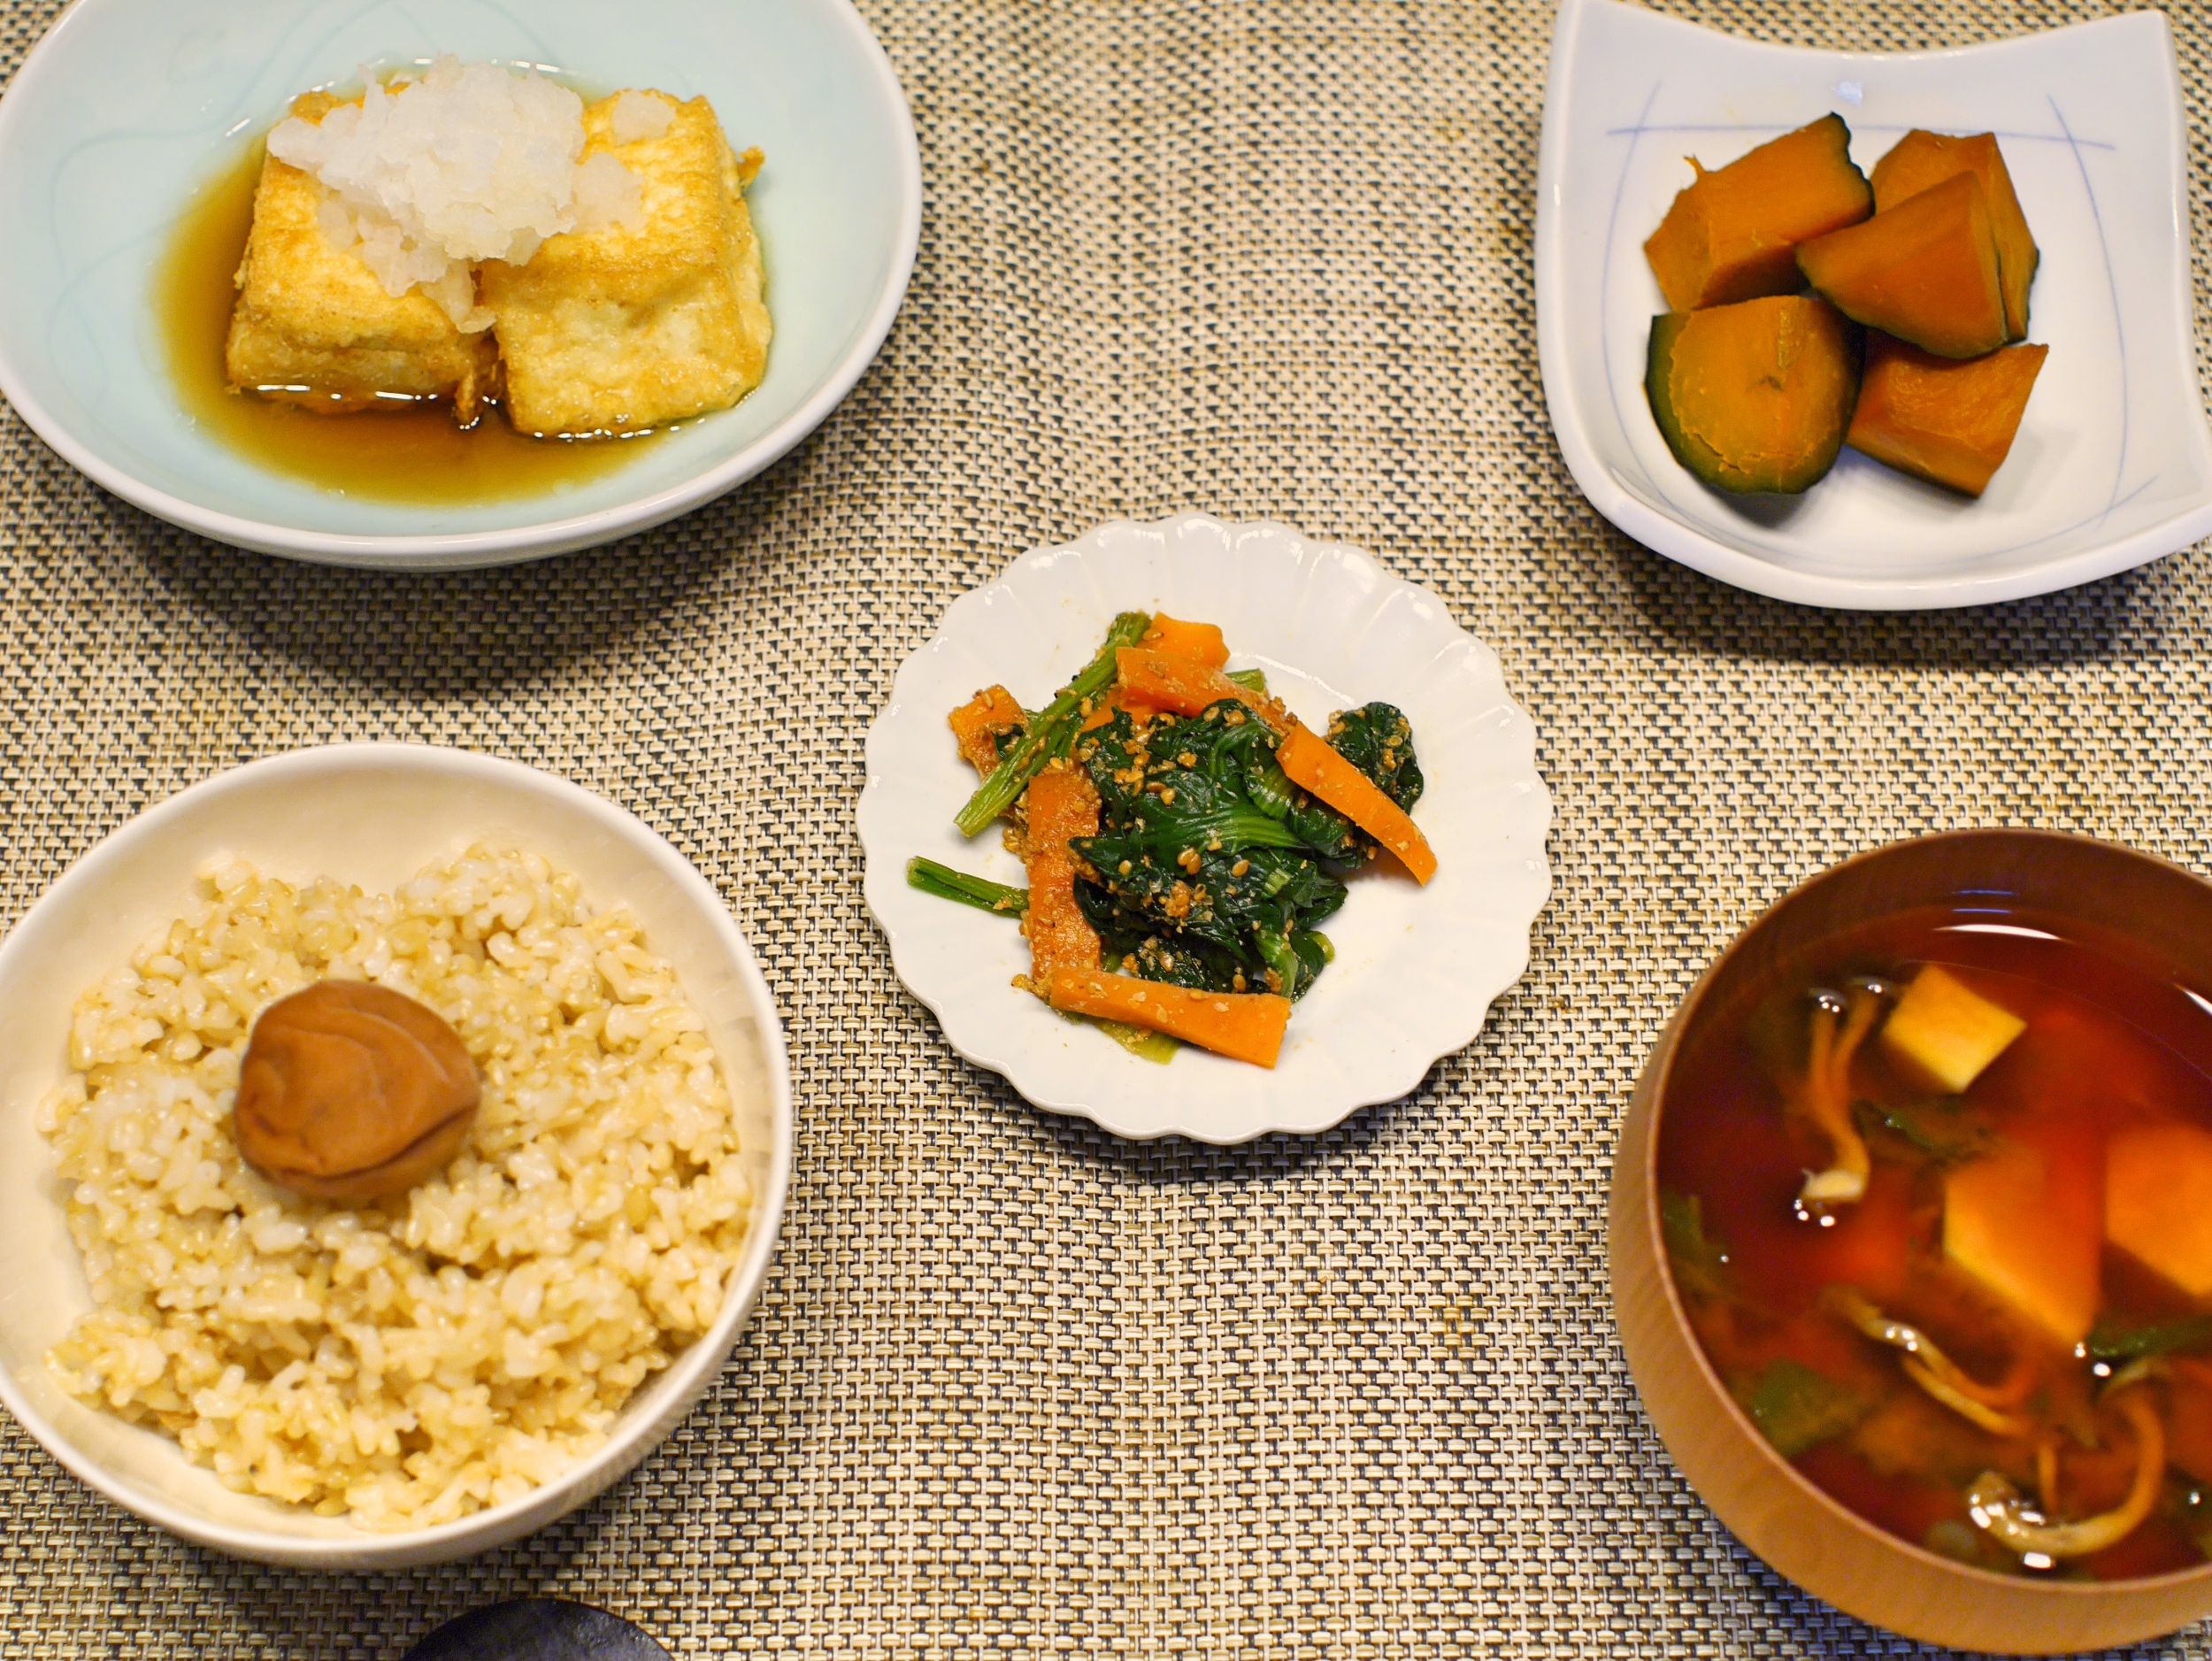 //Organic//Agedashi-dofu and seasonal vegetable dishes